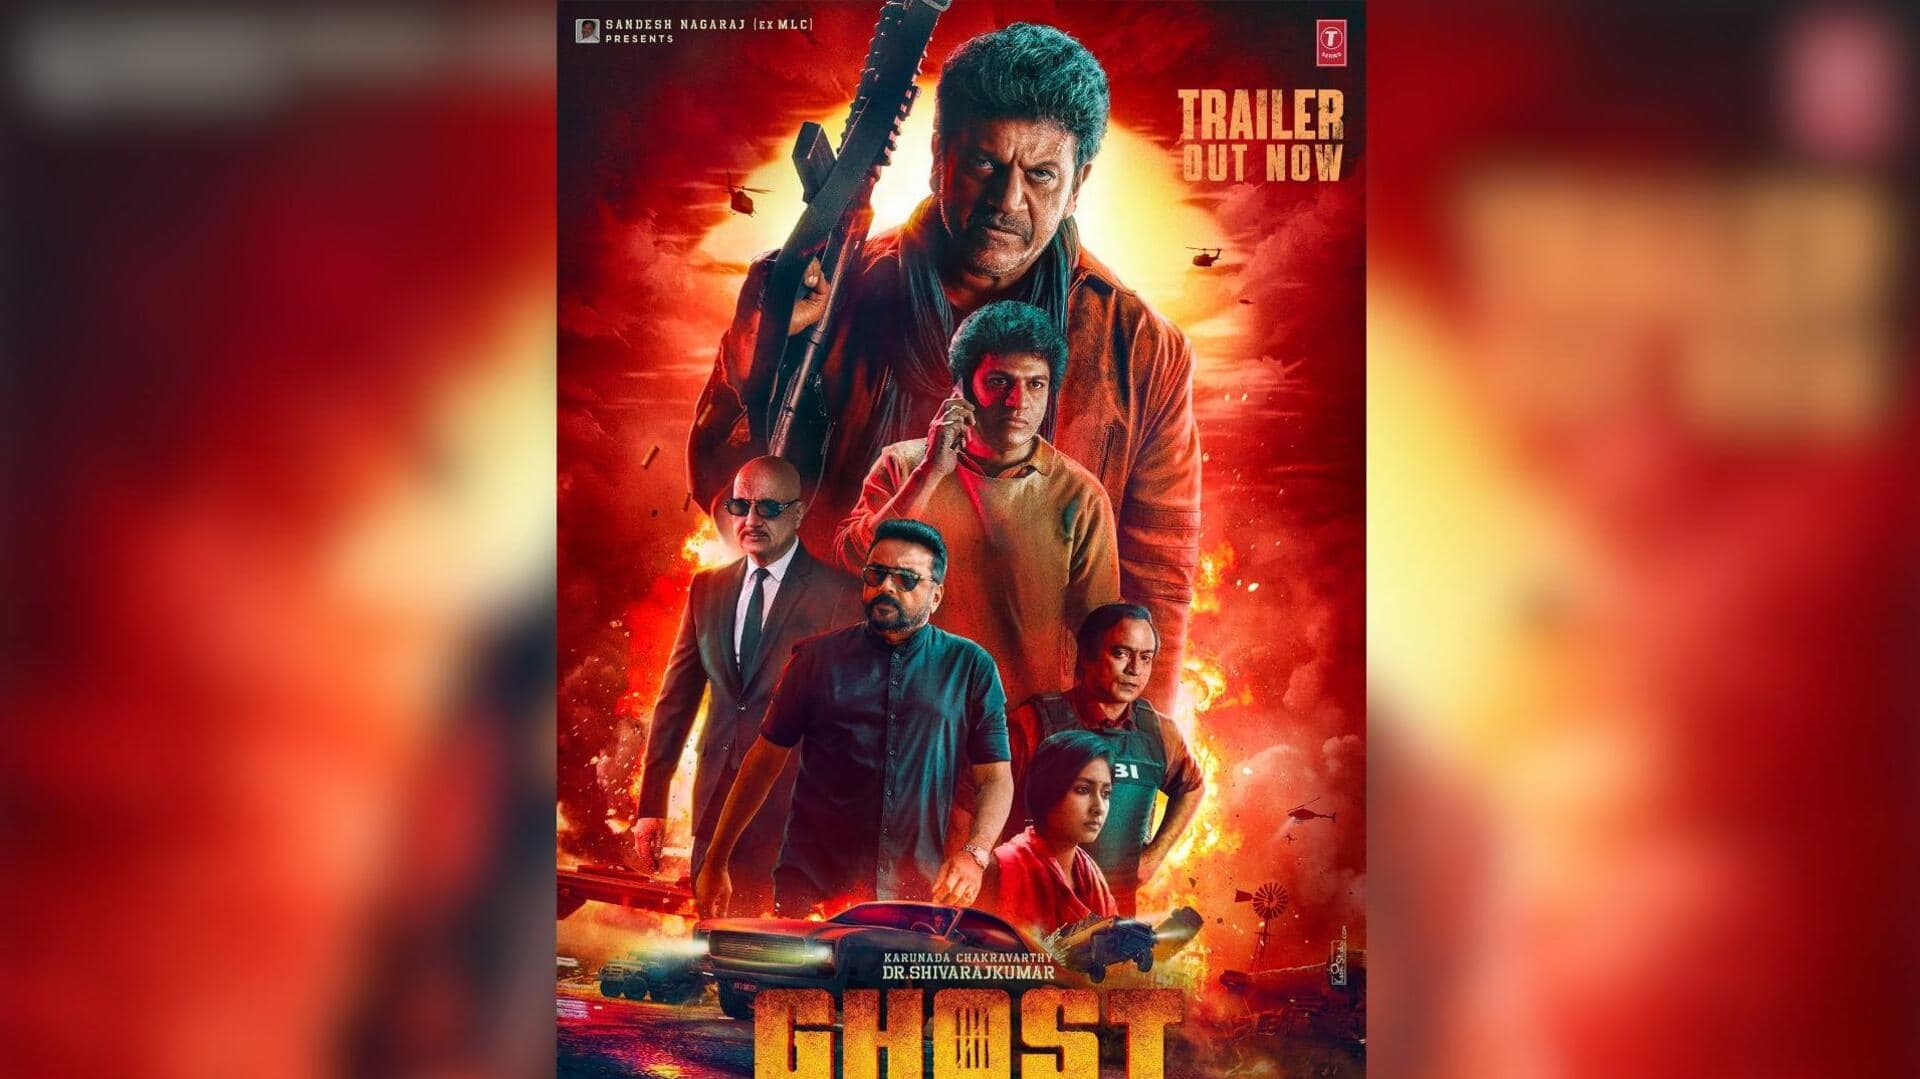 'Ghost' trailer: Actor Shiva Rajkumar channels inner gangster in heist-thriller